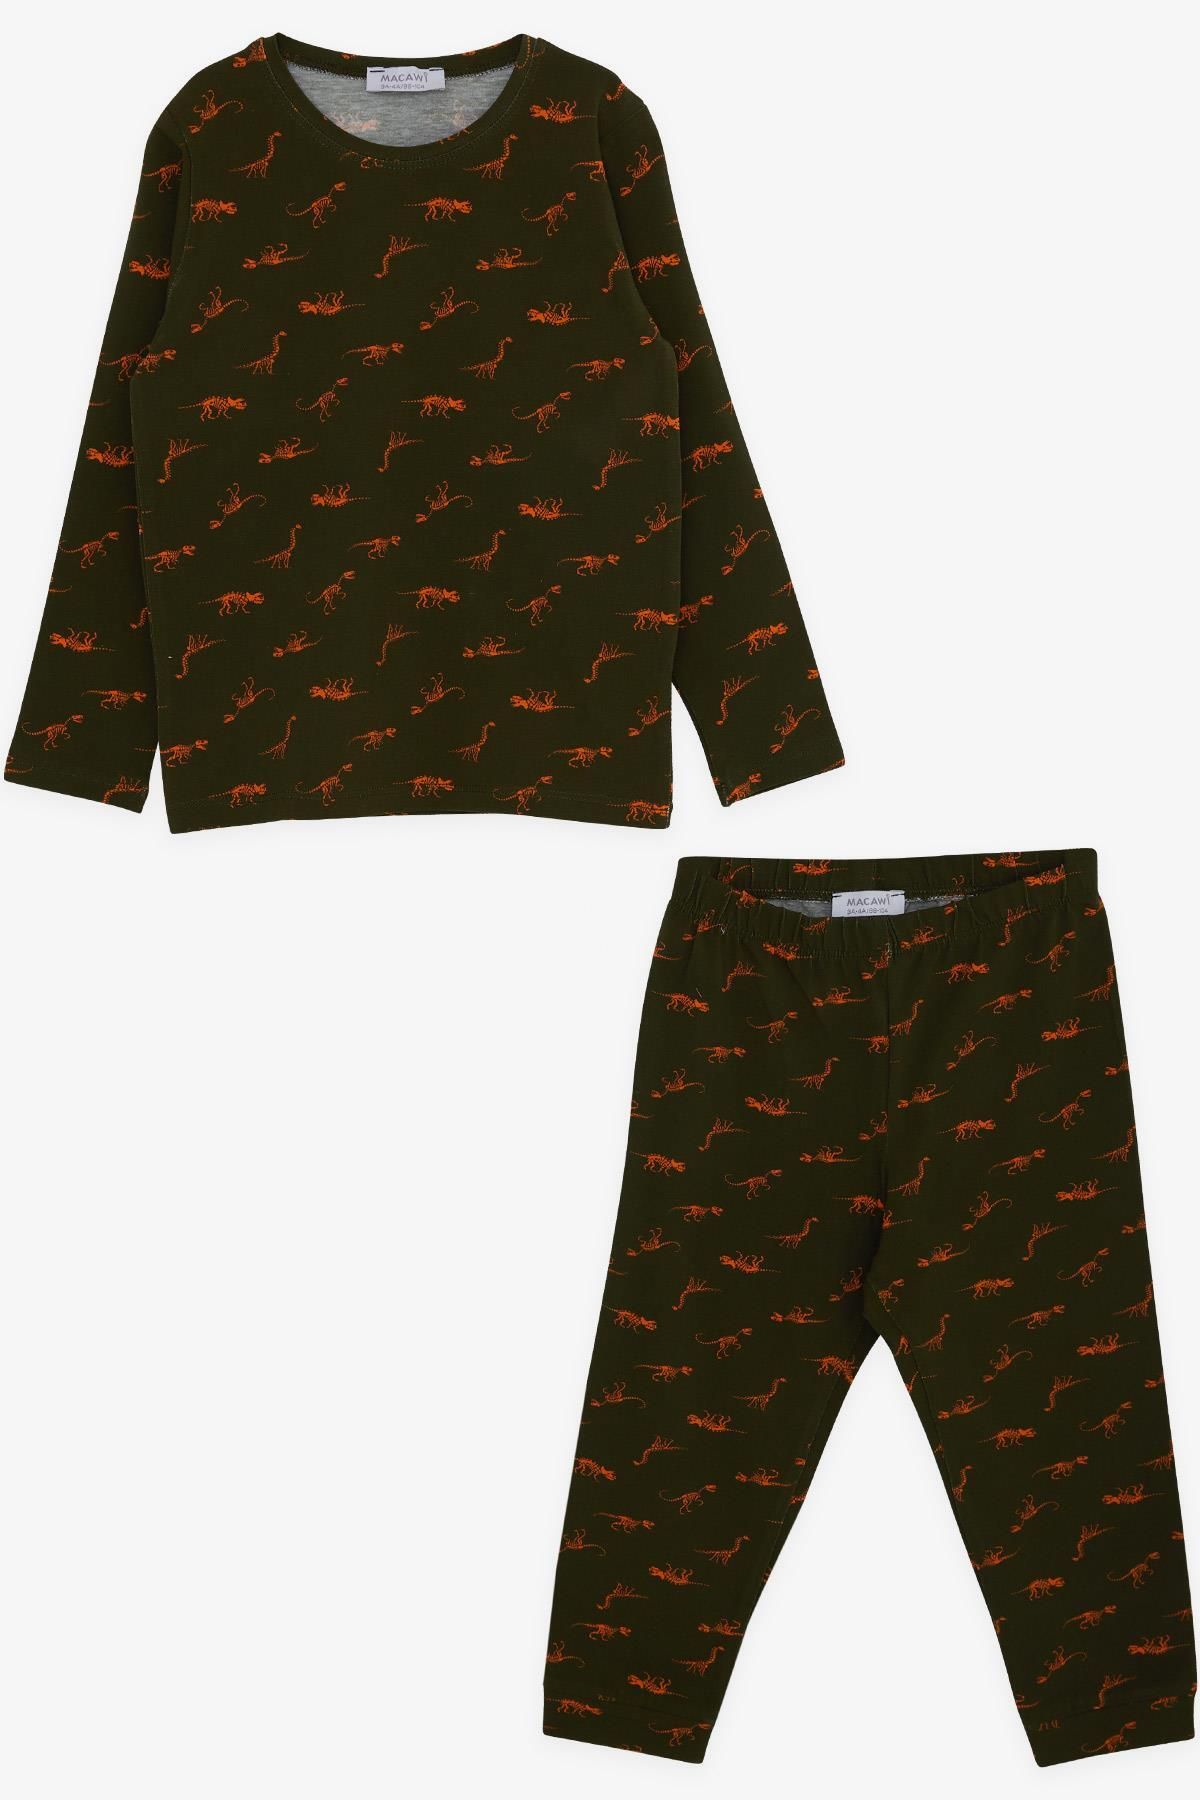 Macawi Erkek Çocuk Pijama Takımı Dinozor Desenli 3-7 Yaş, Koyu Yeşil